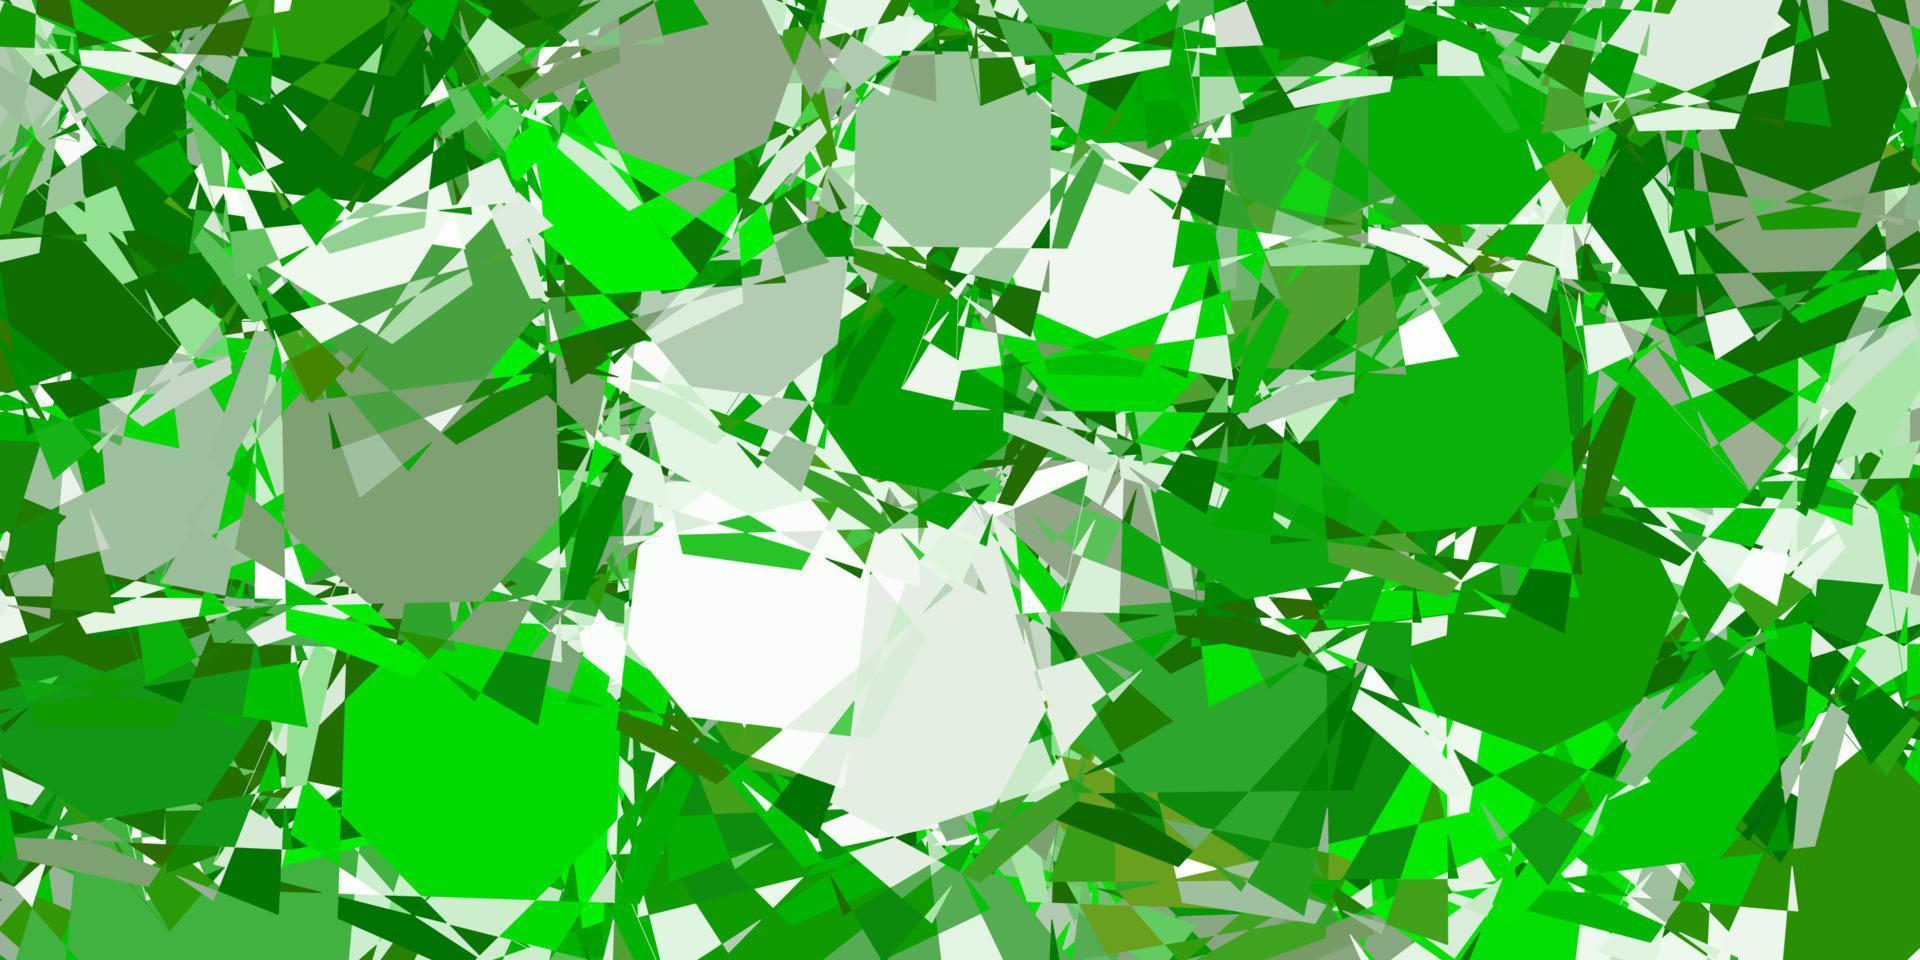 modello vettoriale verde chiaro con forme poligonali.